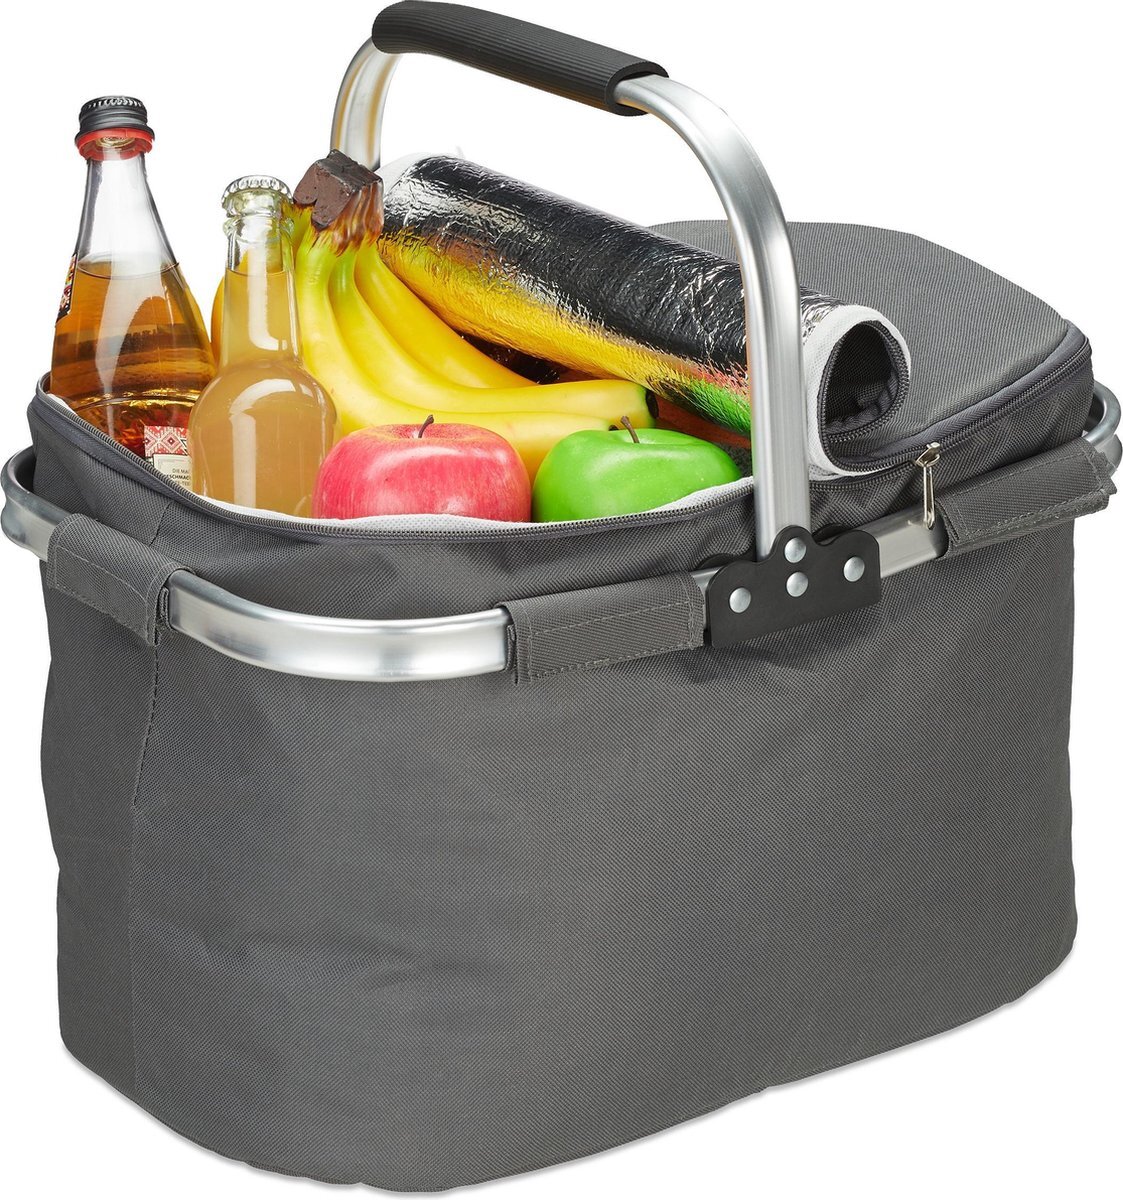 Relaxdays boodschappenmand - boodschappentas - picknickmand - mandje - koeltas - 27 liter